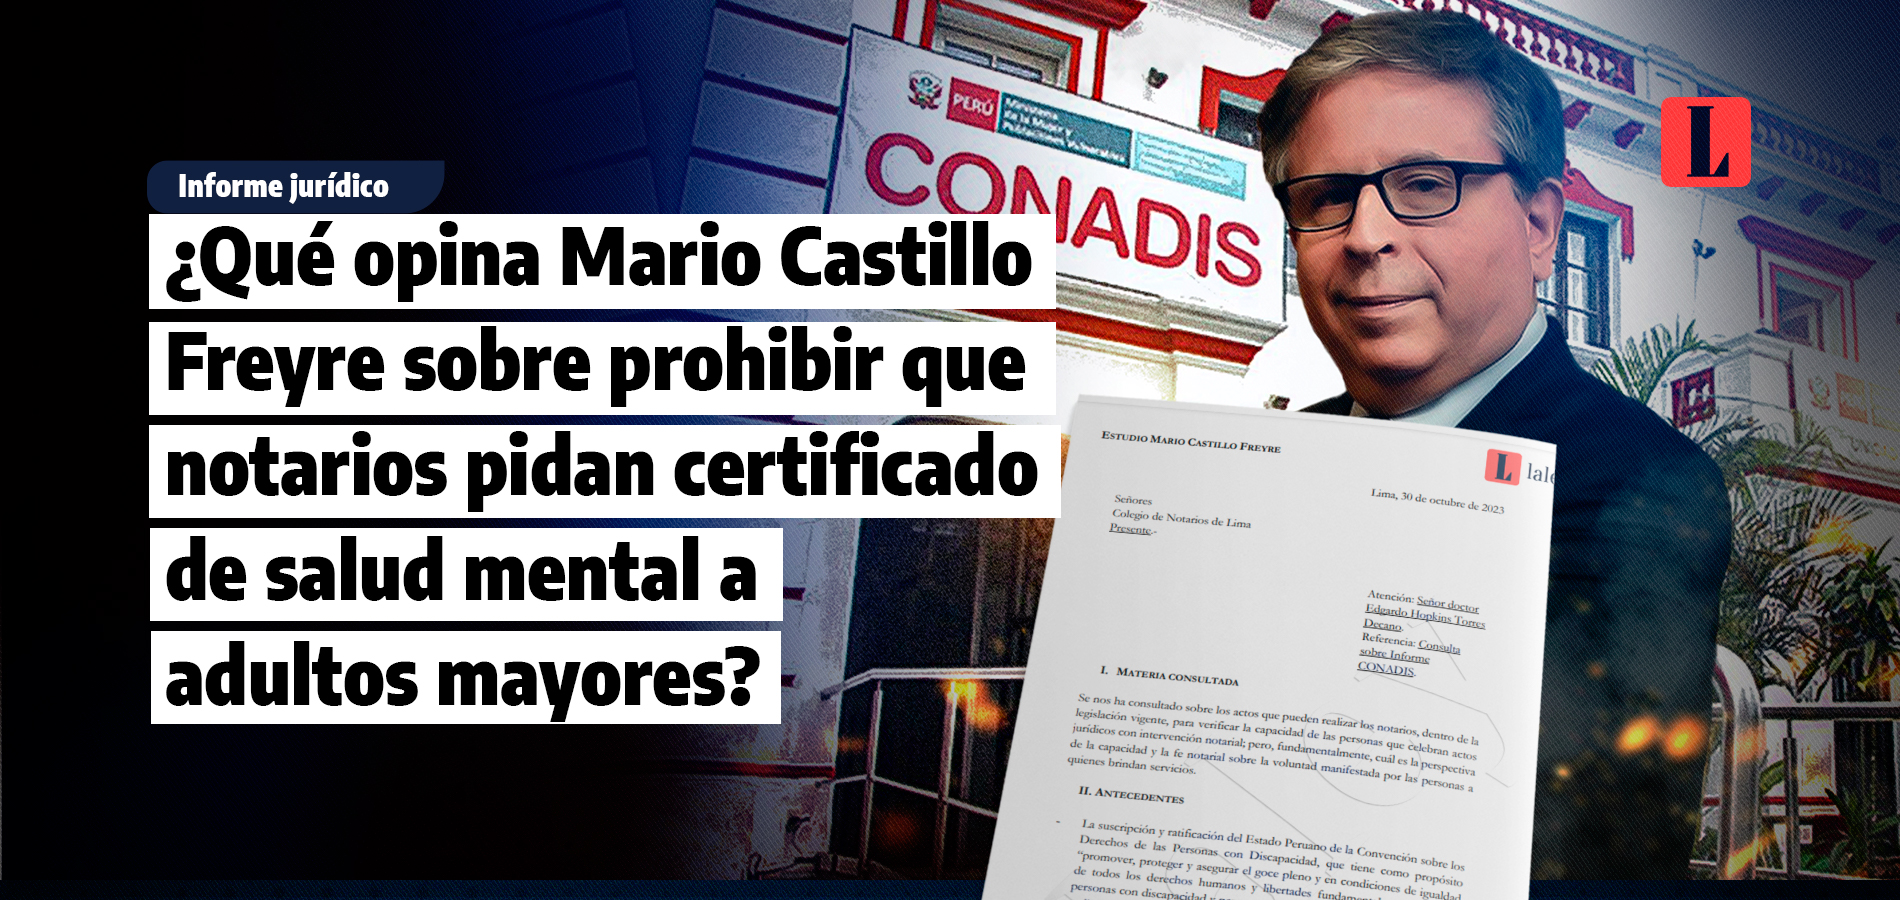 ¿Qué opina Mario Castillo Freyre sobre prohibir que notarios pidan certificado de salud mental a adultos mayores?